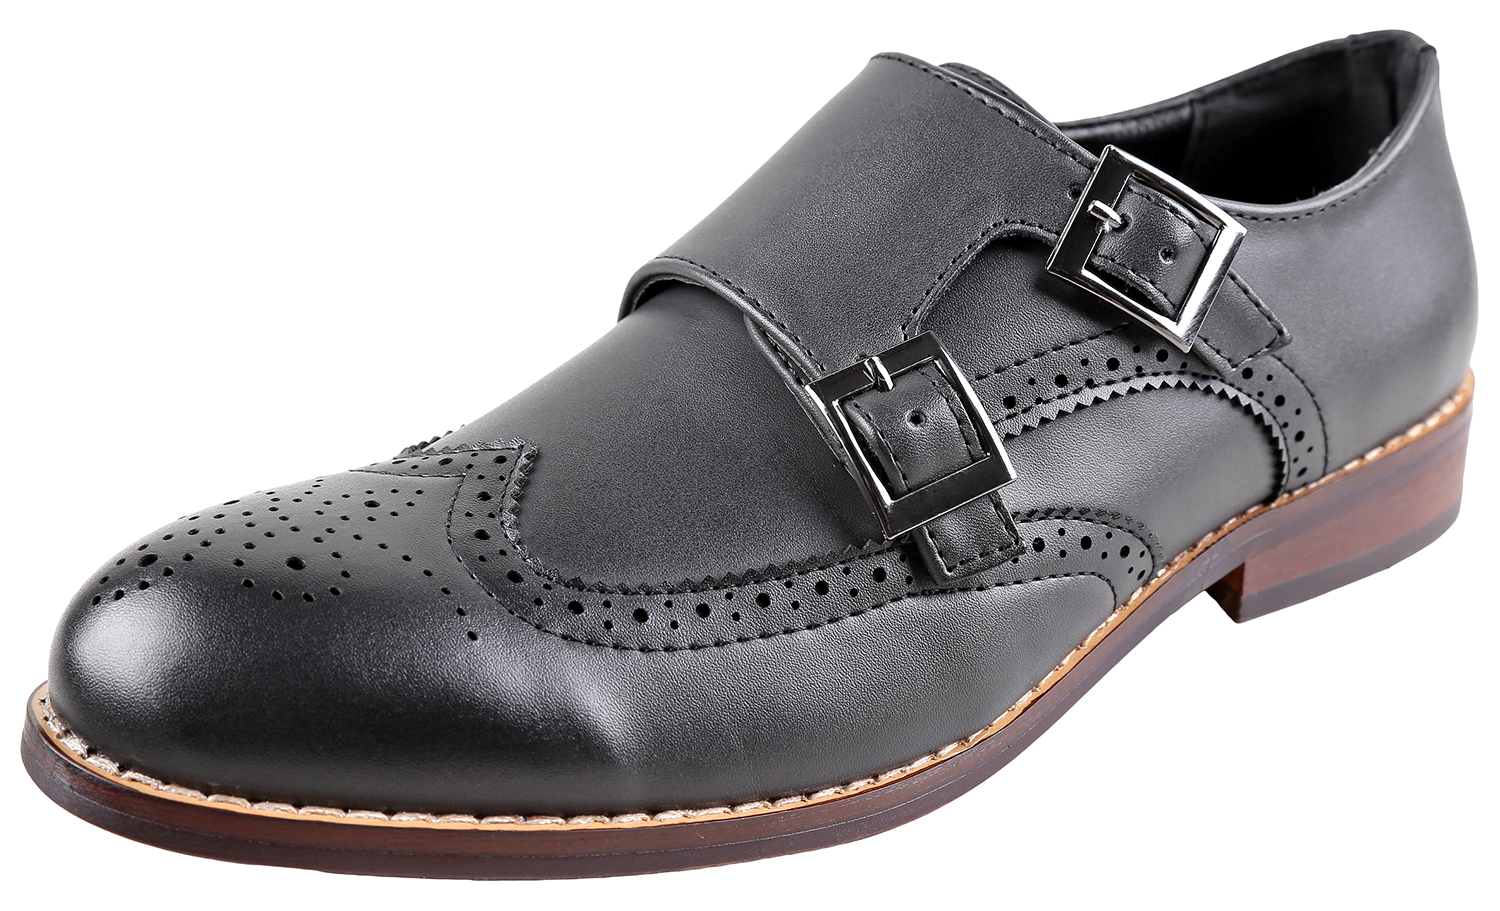 Urban Fox Allen Men's Dress Shoe | Double Monk Strap | Brogue | Wingtip Shoes for Men | Black 12 M US - image 1 of 7